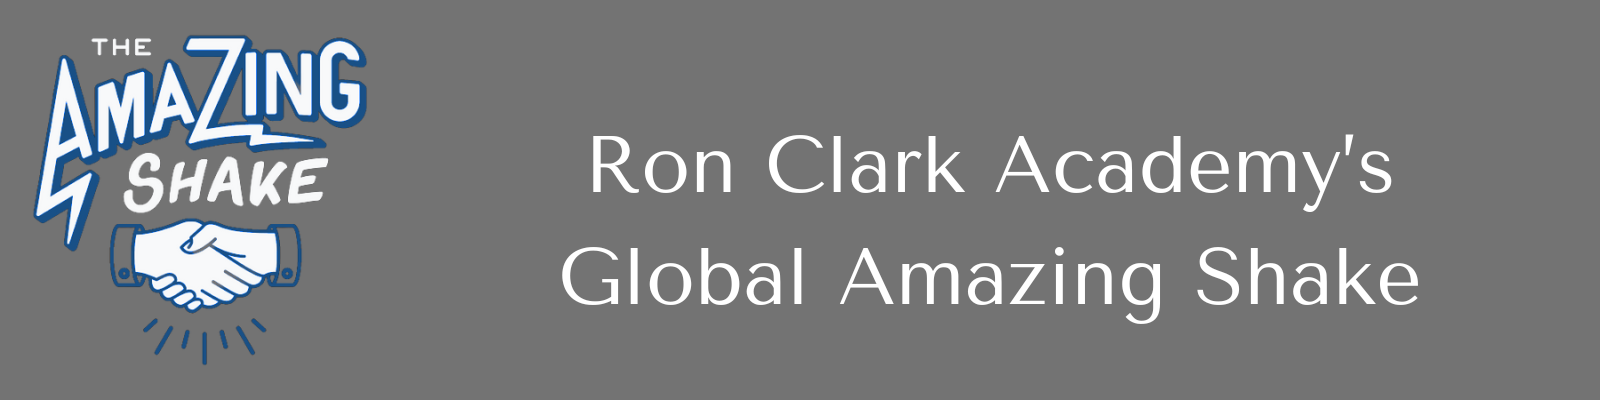 Ron Clark Academy's Global Amazing Shake